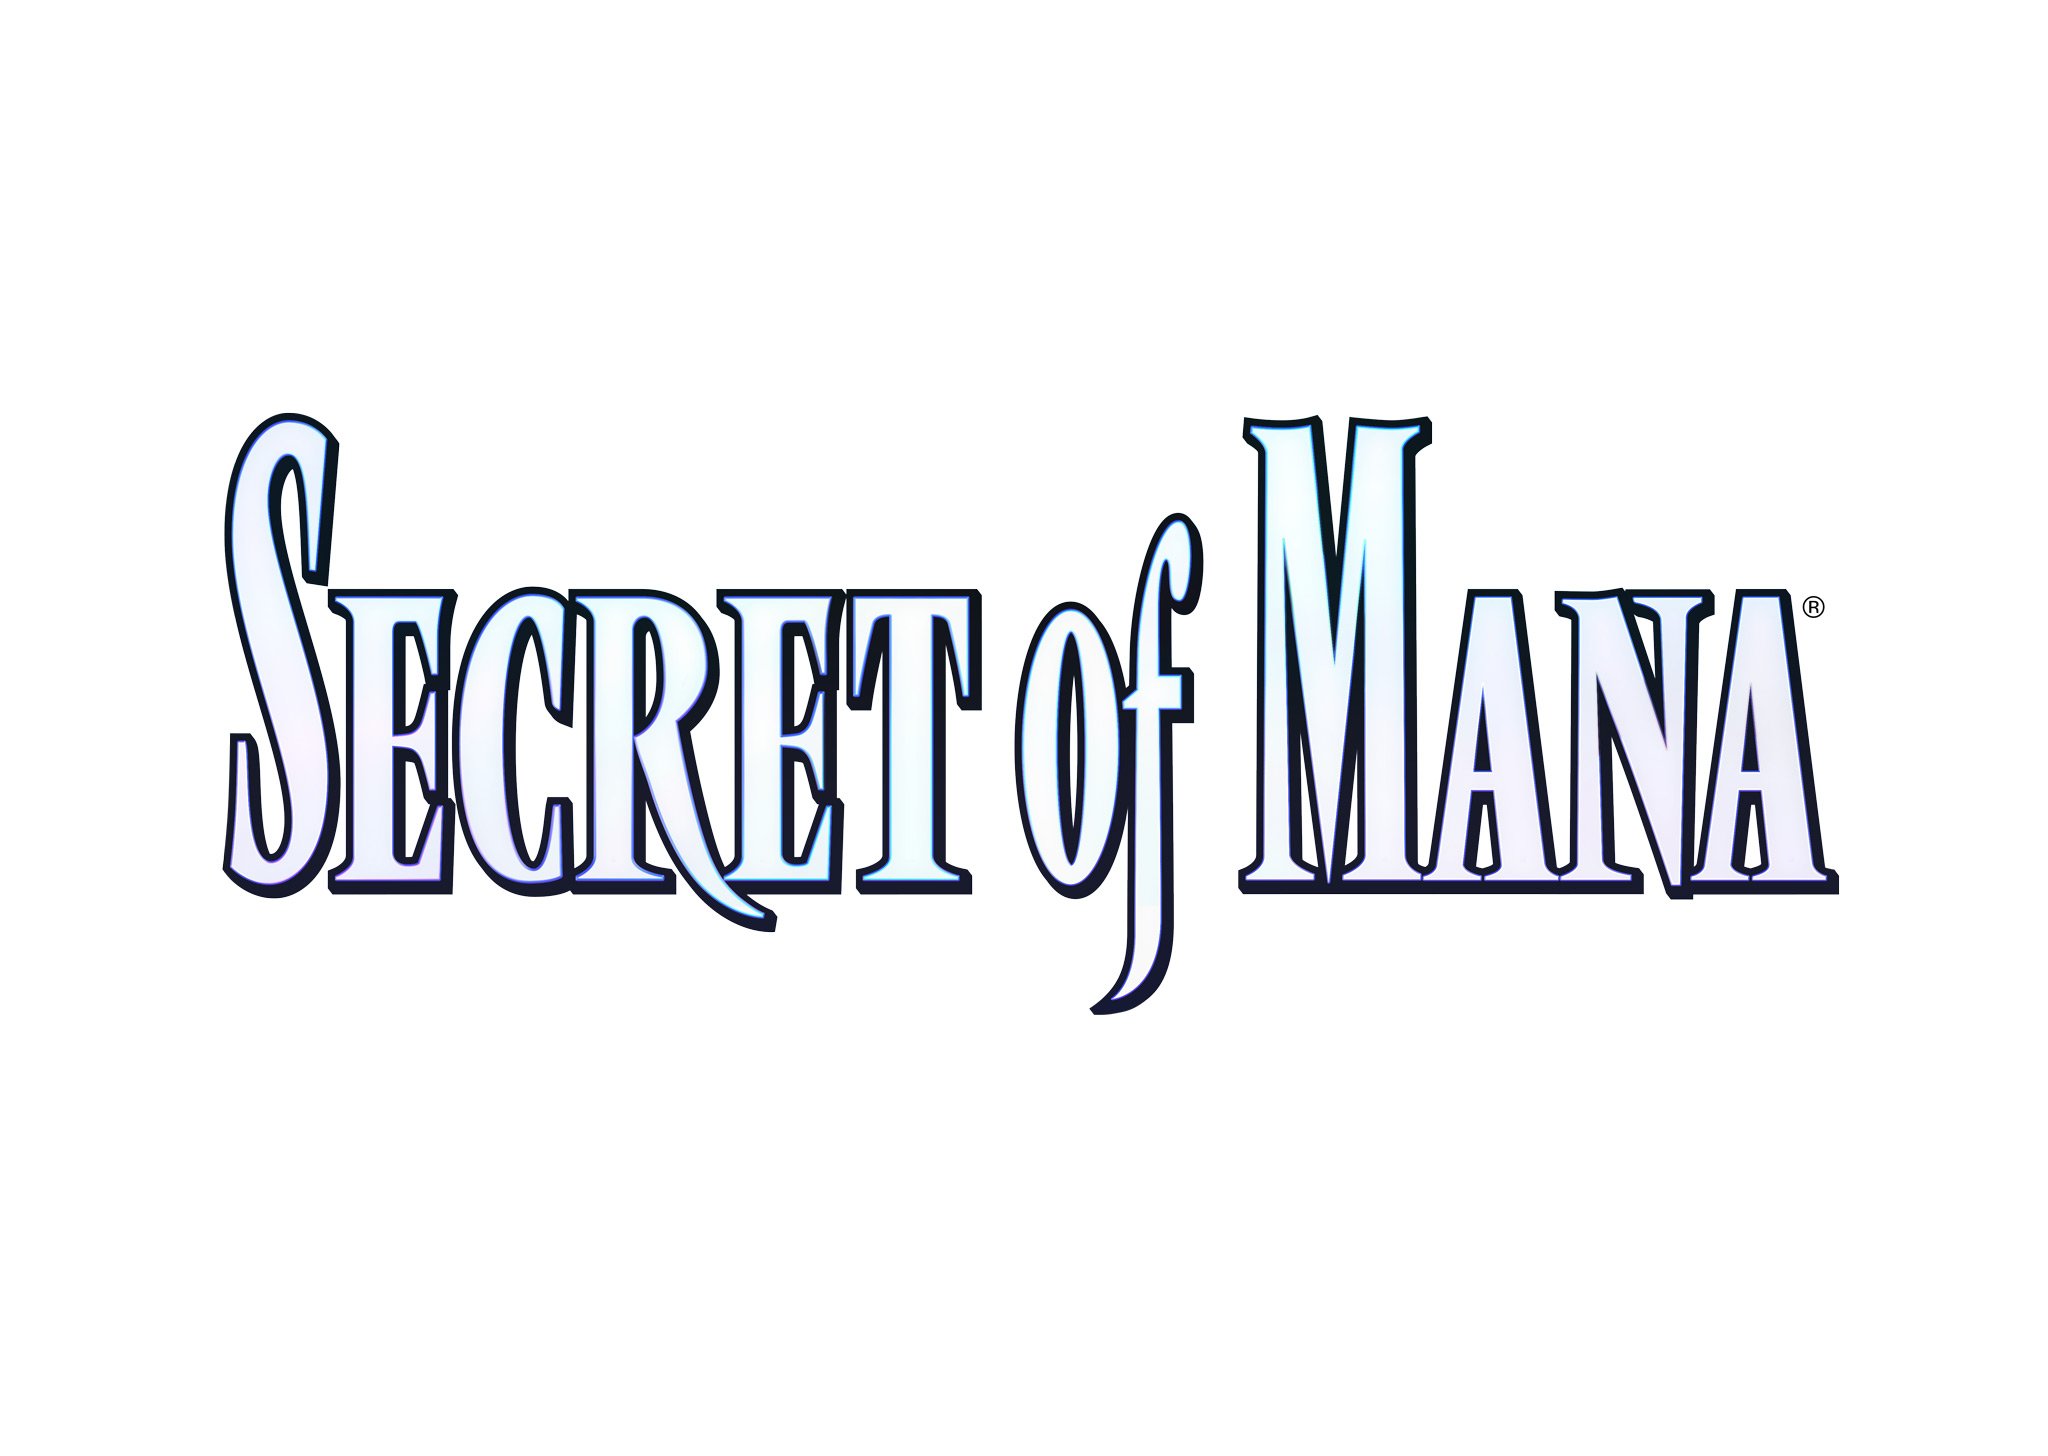 SECERT of MANA logo